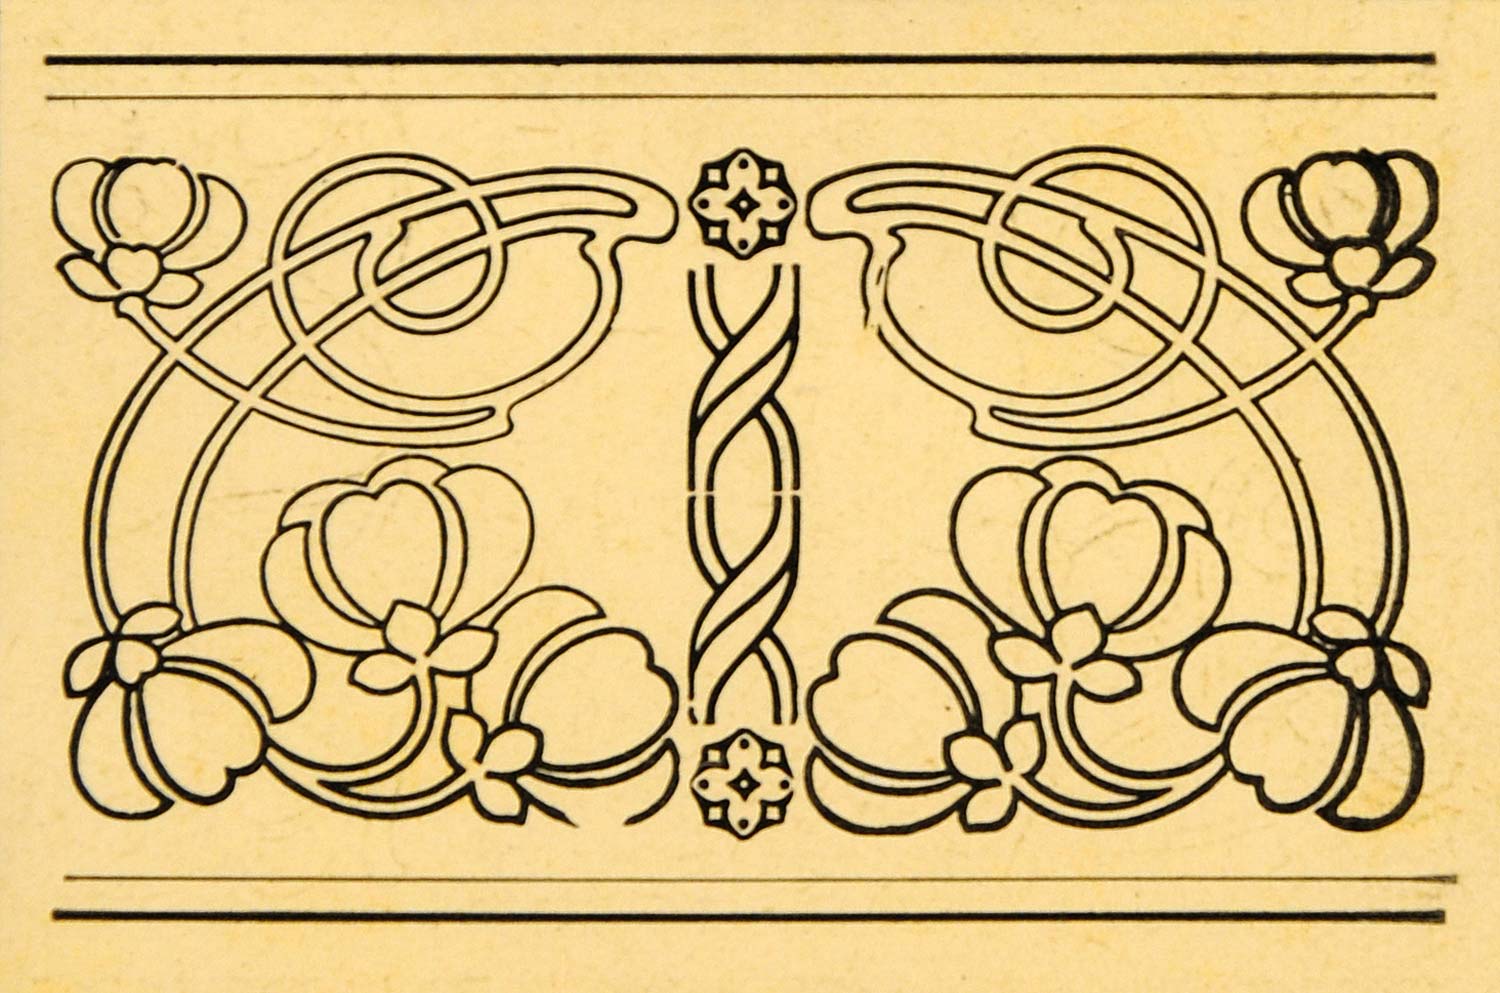 1921 Art Nouveau Floral Design Border Lithograph Original Sil1